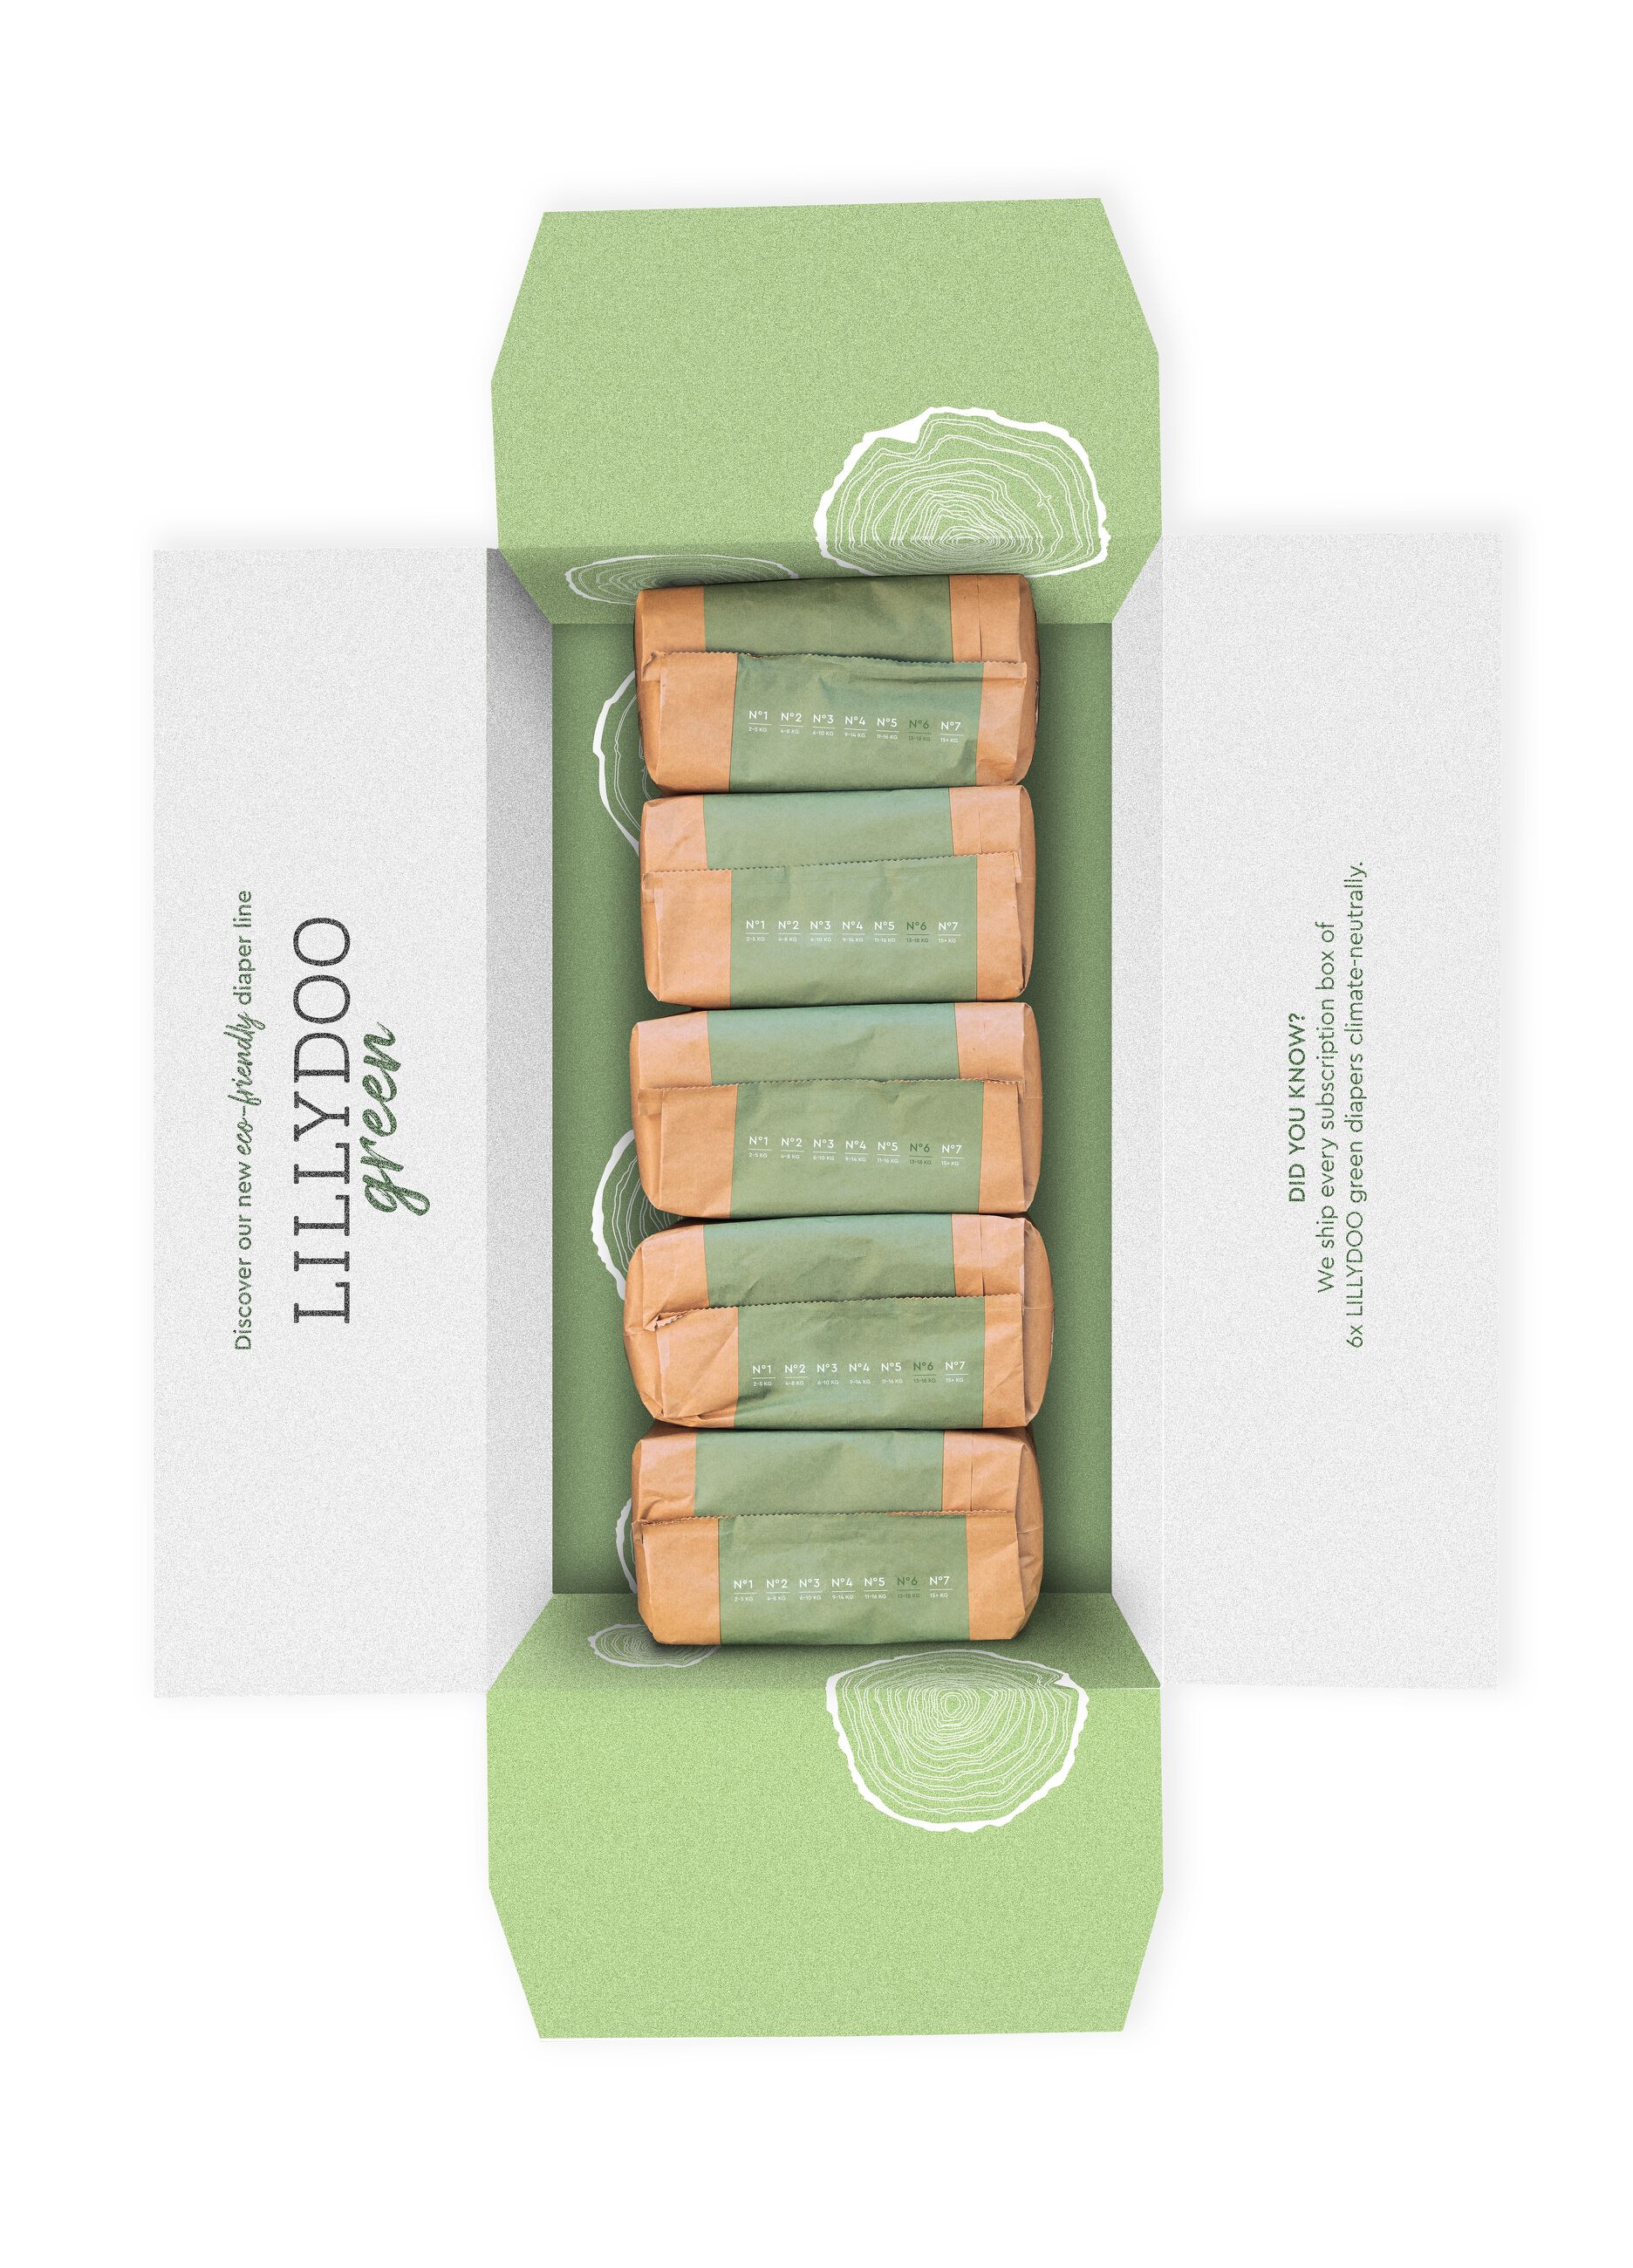 Pannolini multipack da 5 confezioni ecosostenibili N°6 (13-18Kg) Lillydoo